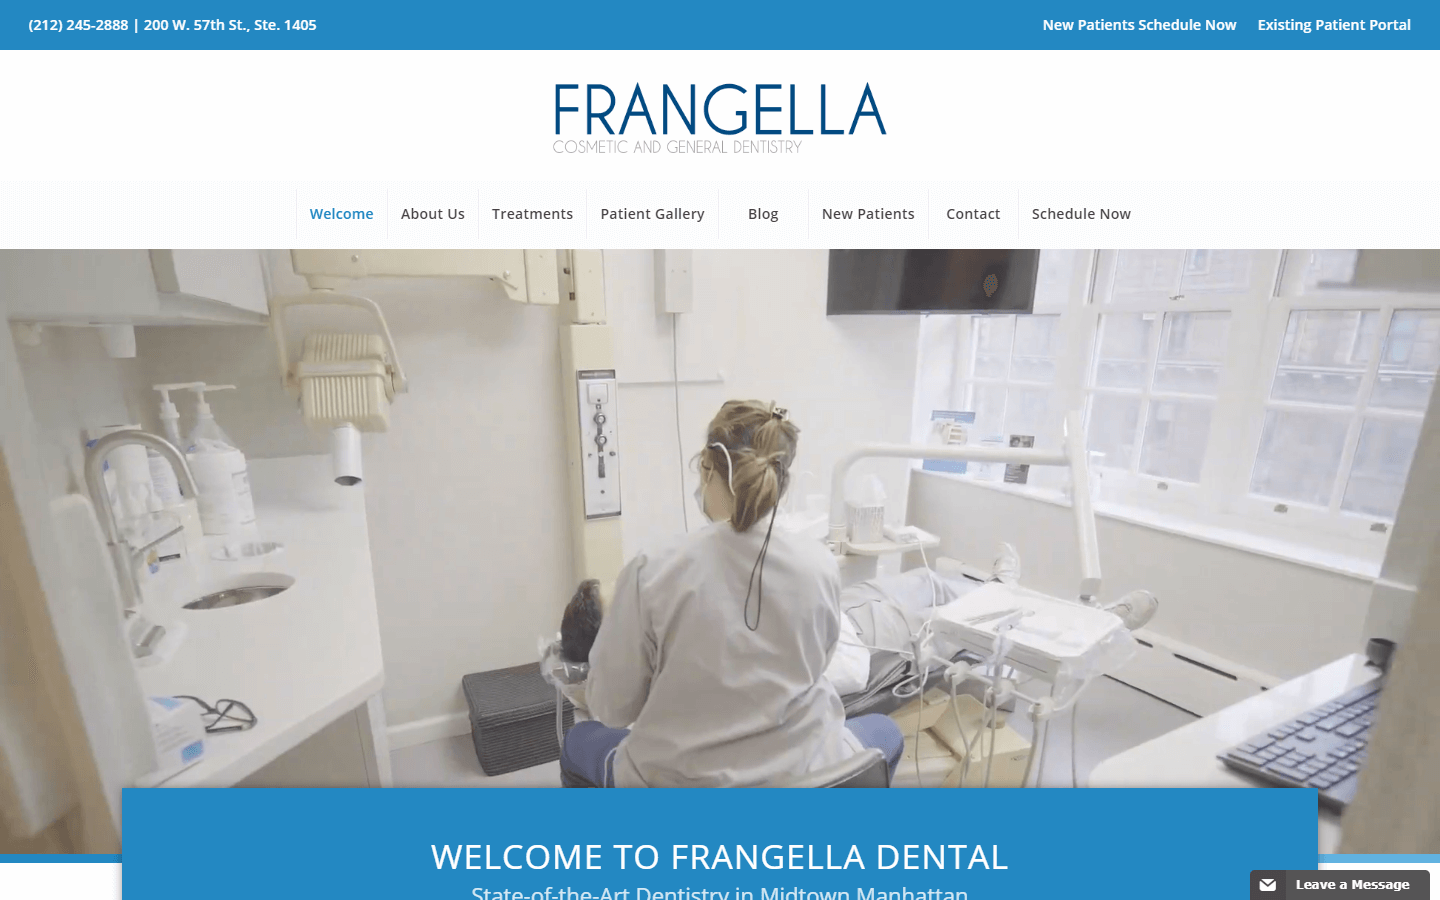 Frangella Dental